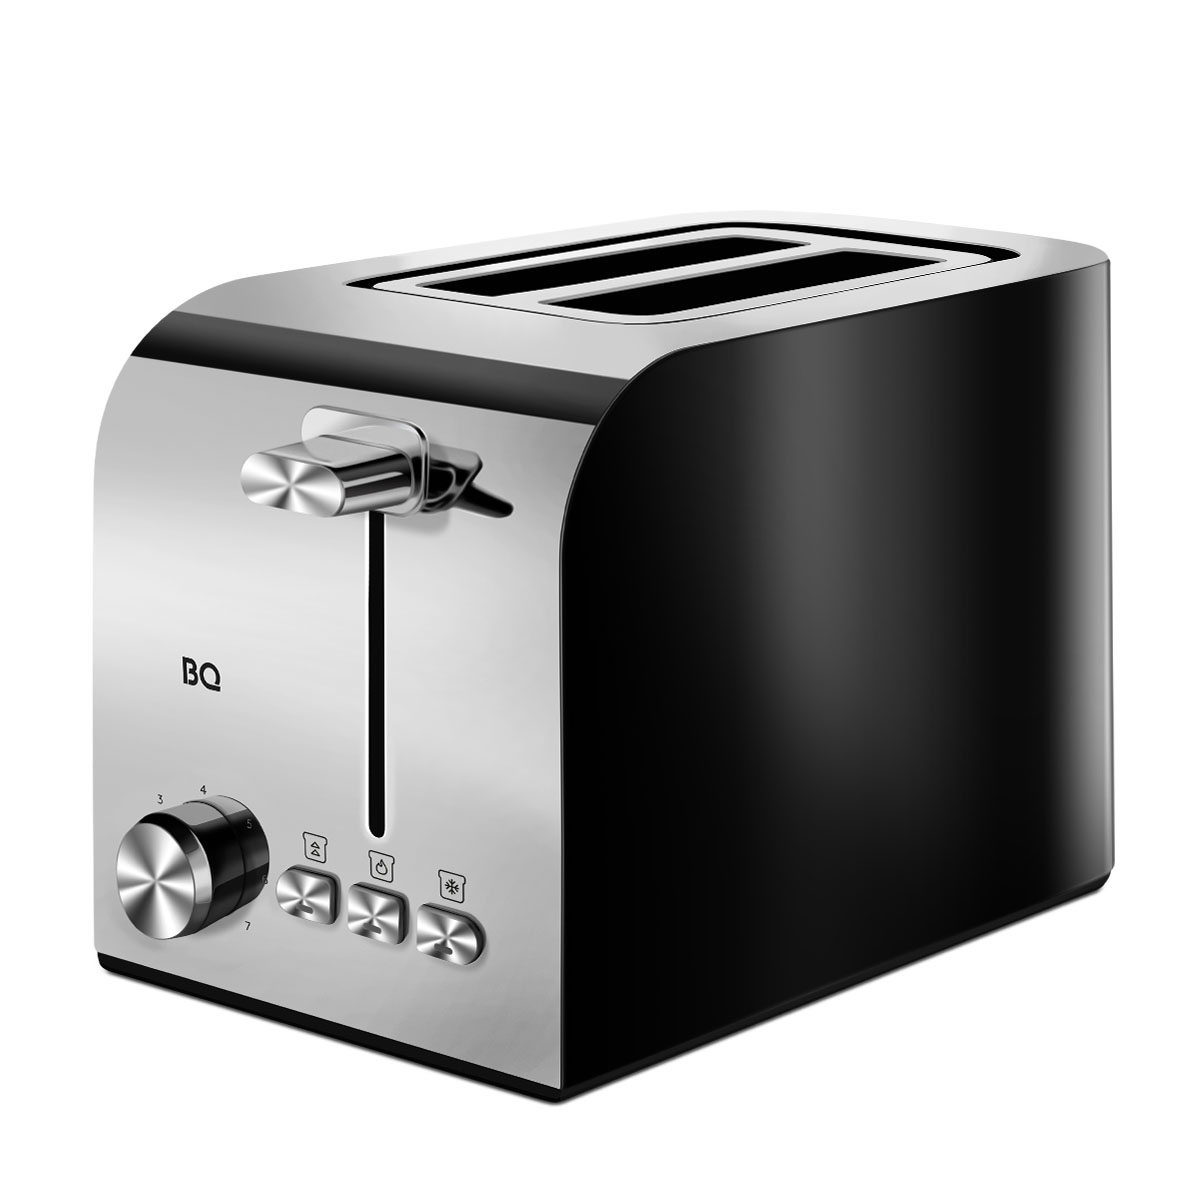 Тостер BQ T2000 серебристый, черный тостер galaxy gl 2912 1200 вт 7 режимов прожарки 2 тоста серо голубой